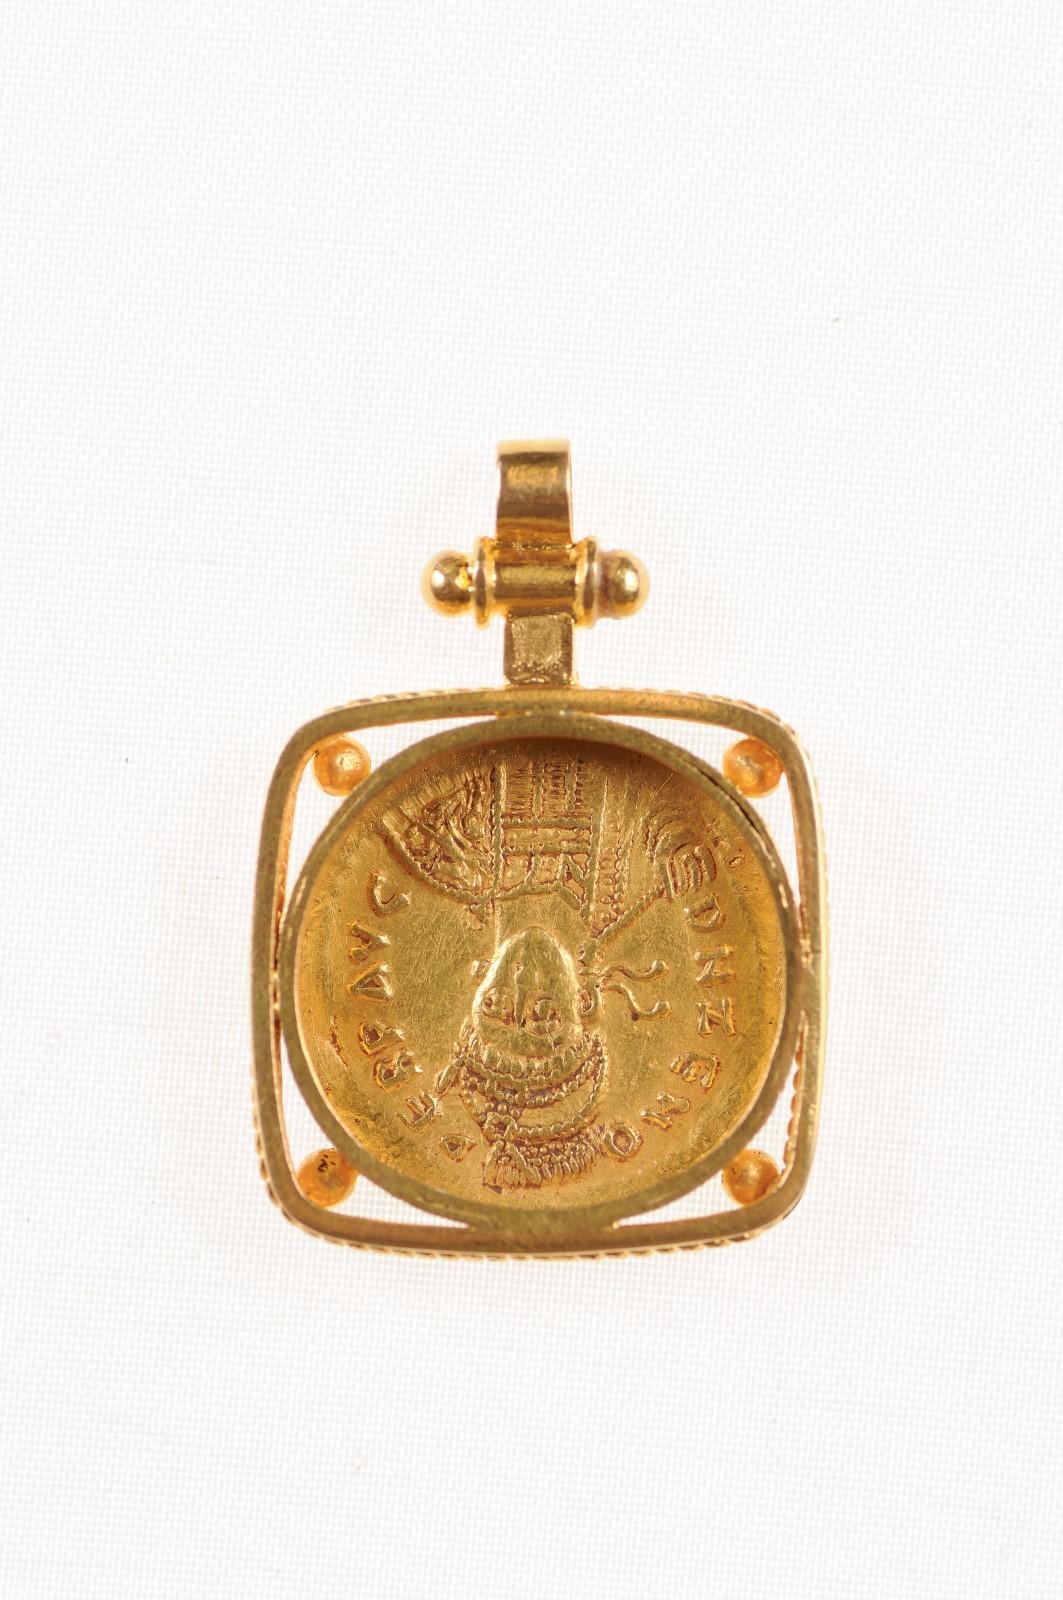 Zeno 2nd Reign AV Gold Solidus Pendant (pendant only) For Sale 2